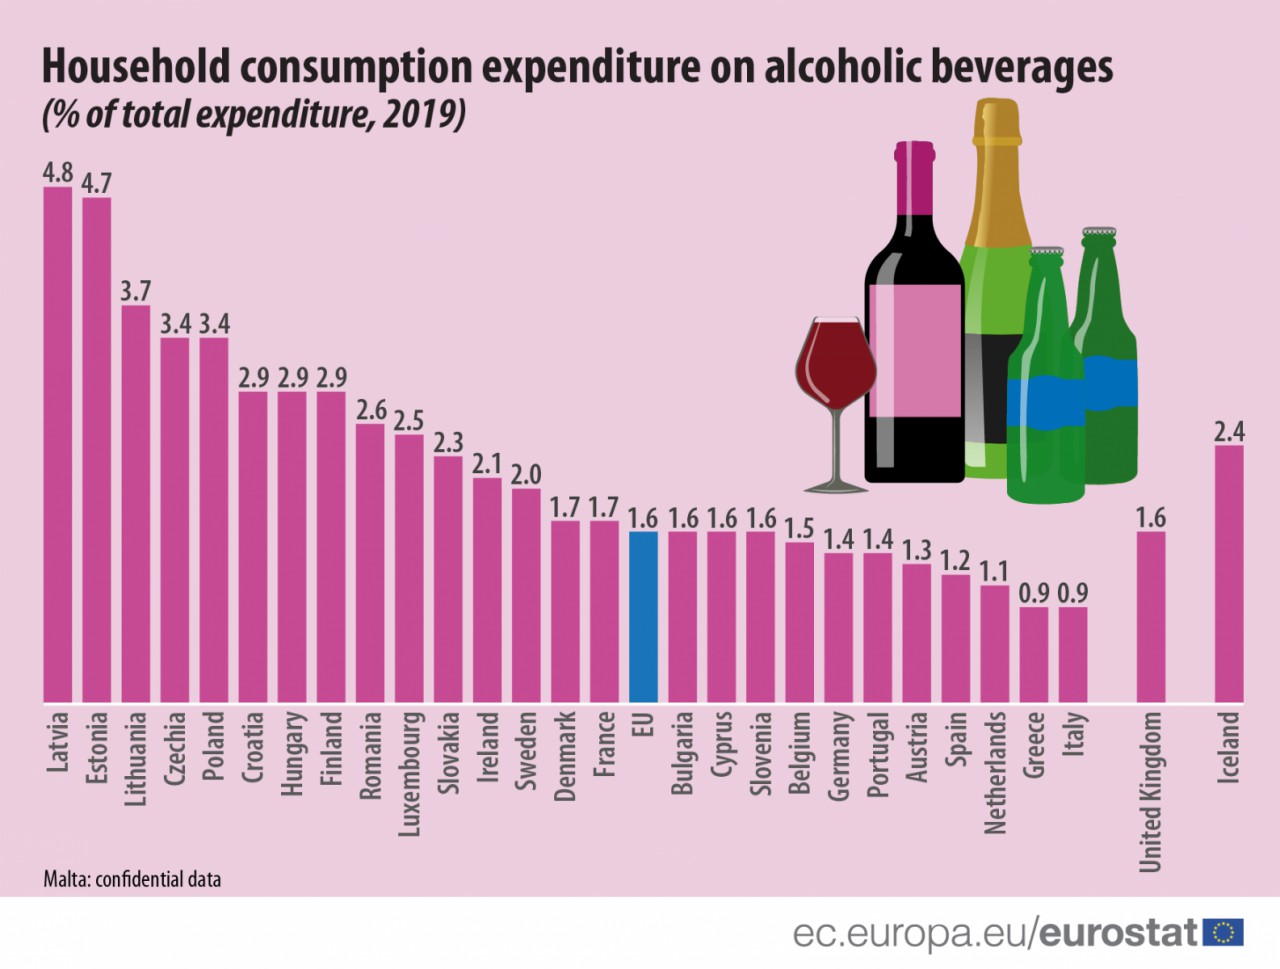 Cheltuielile pentru alcool ale românilor au înregistrat cea mai mare creştere din UE în ultimul deceniu